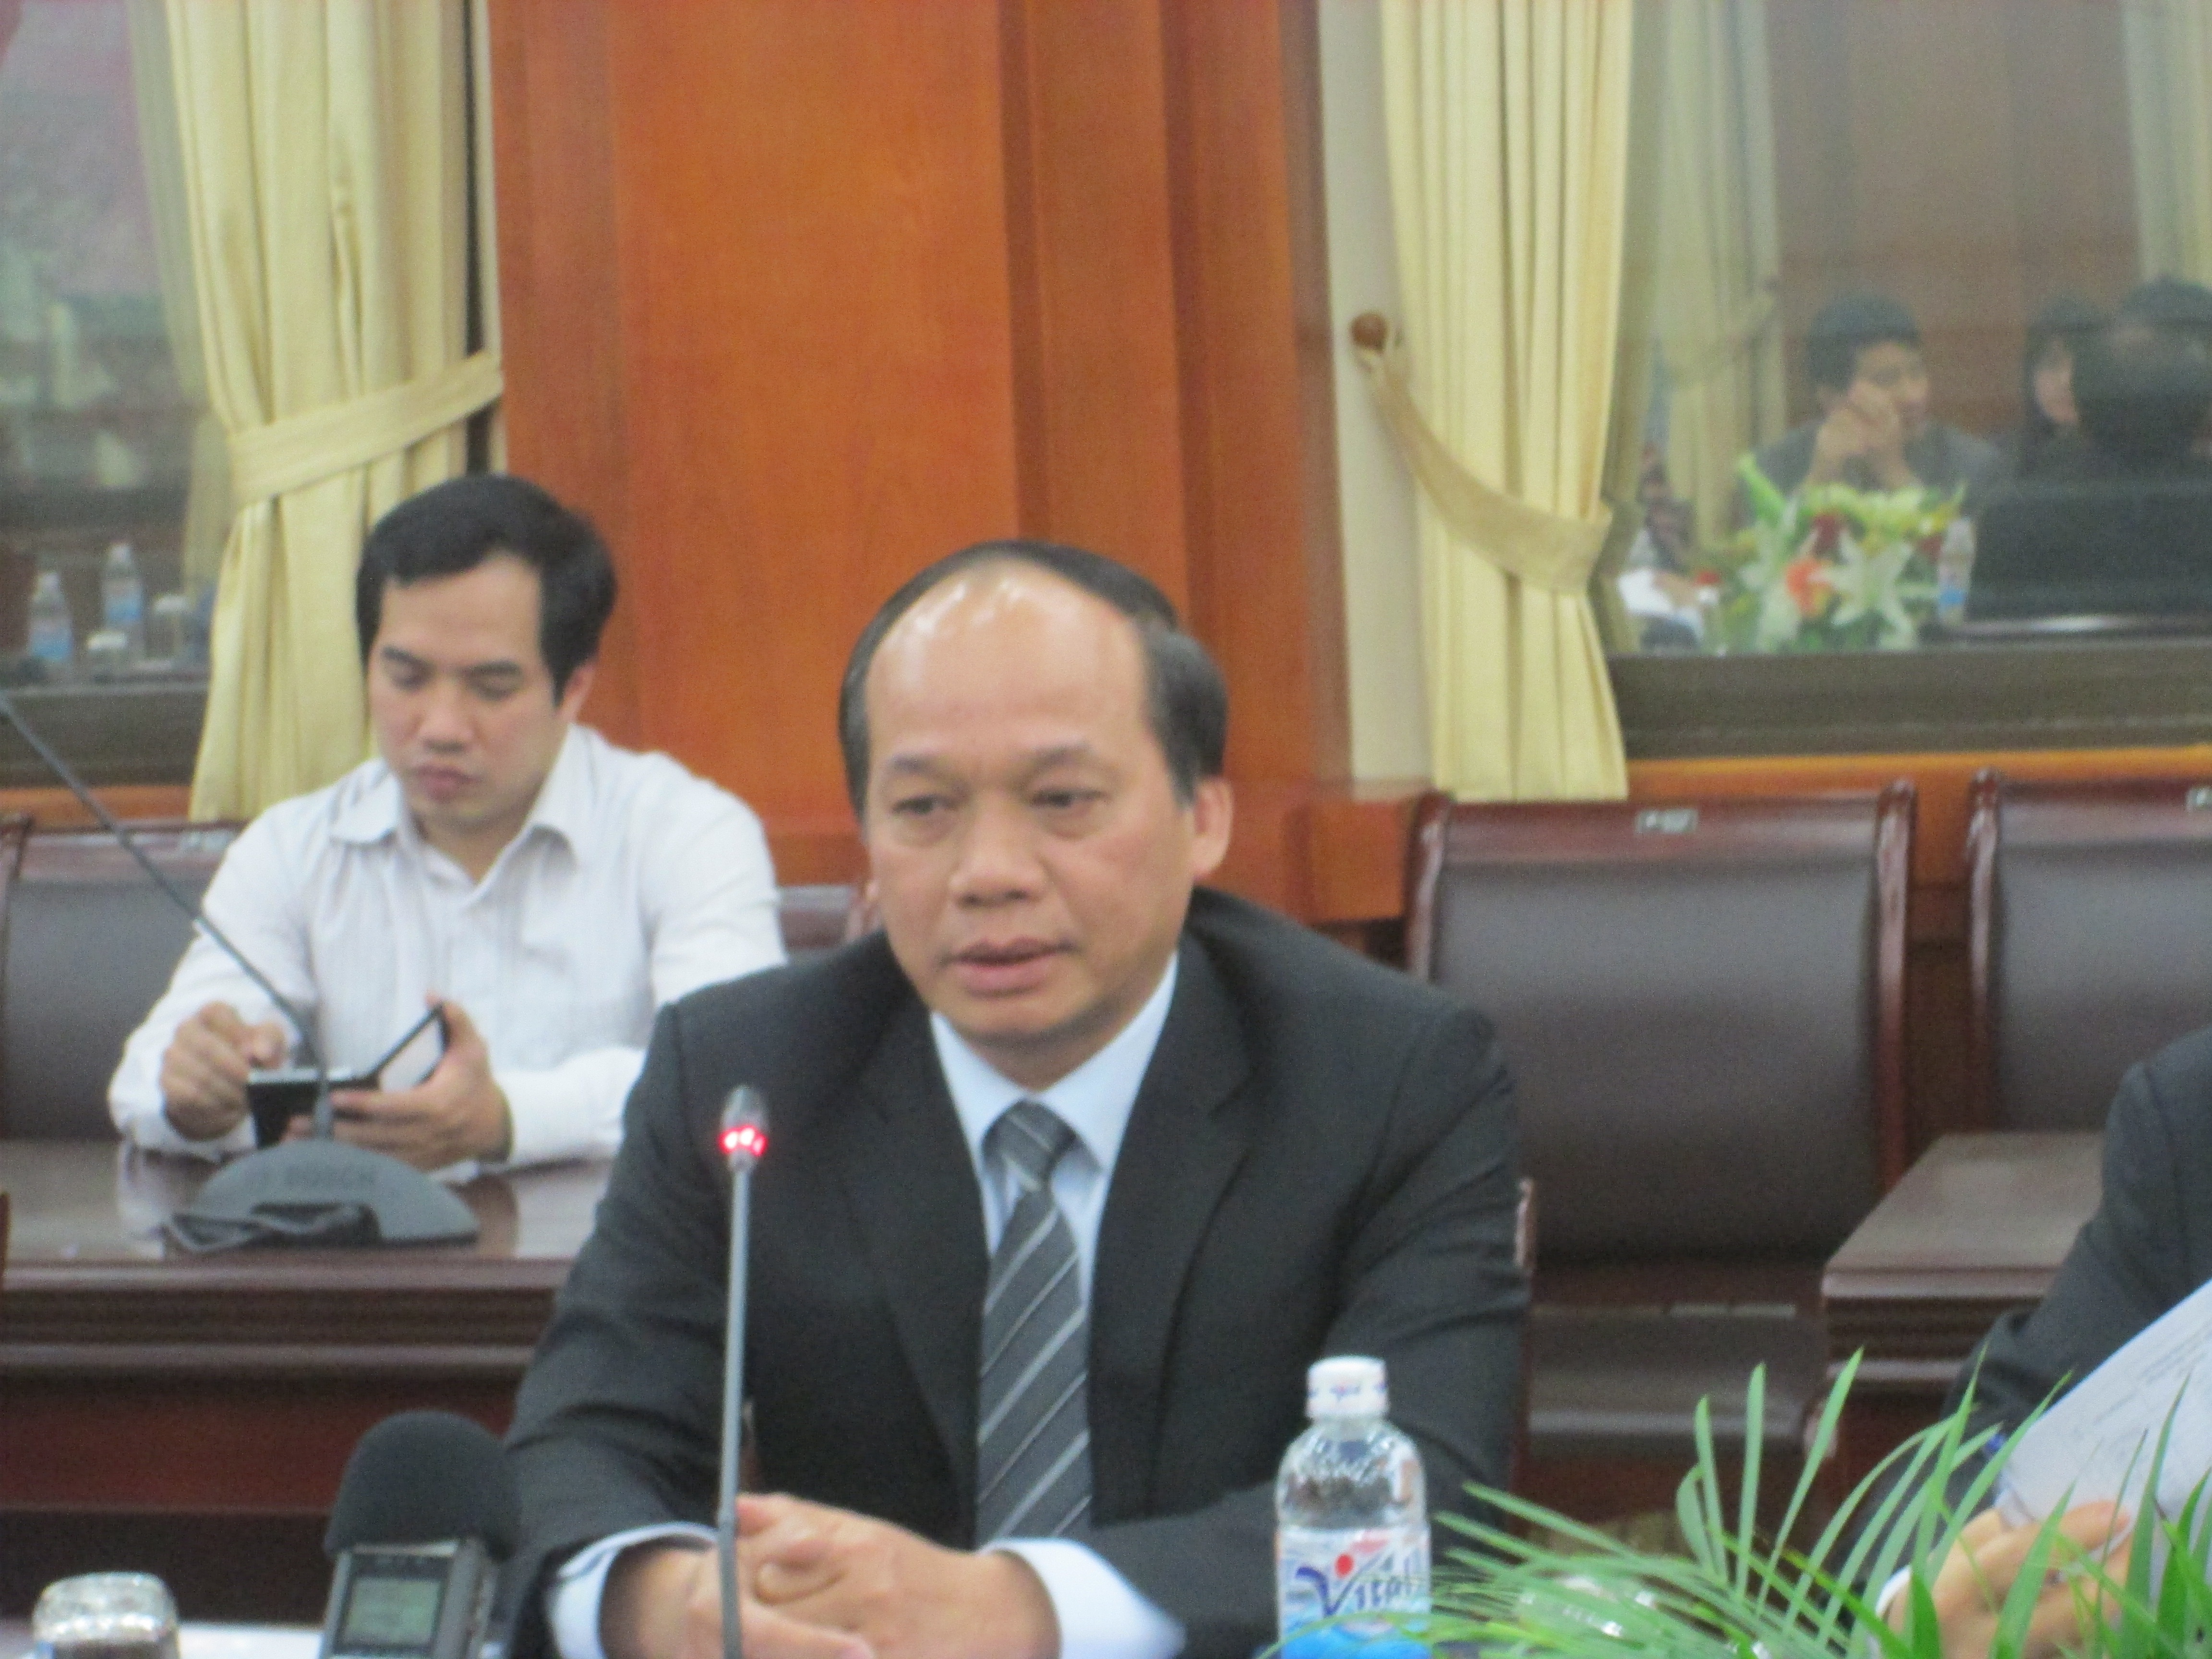 Thứ trưởng Bộ NN&PTNT Vũ Văn Tám chỉ đạo tại cuộc họp (Ảnh: N.A)